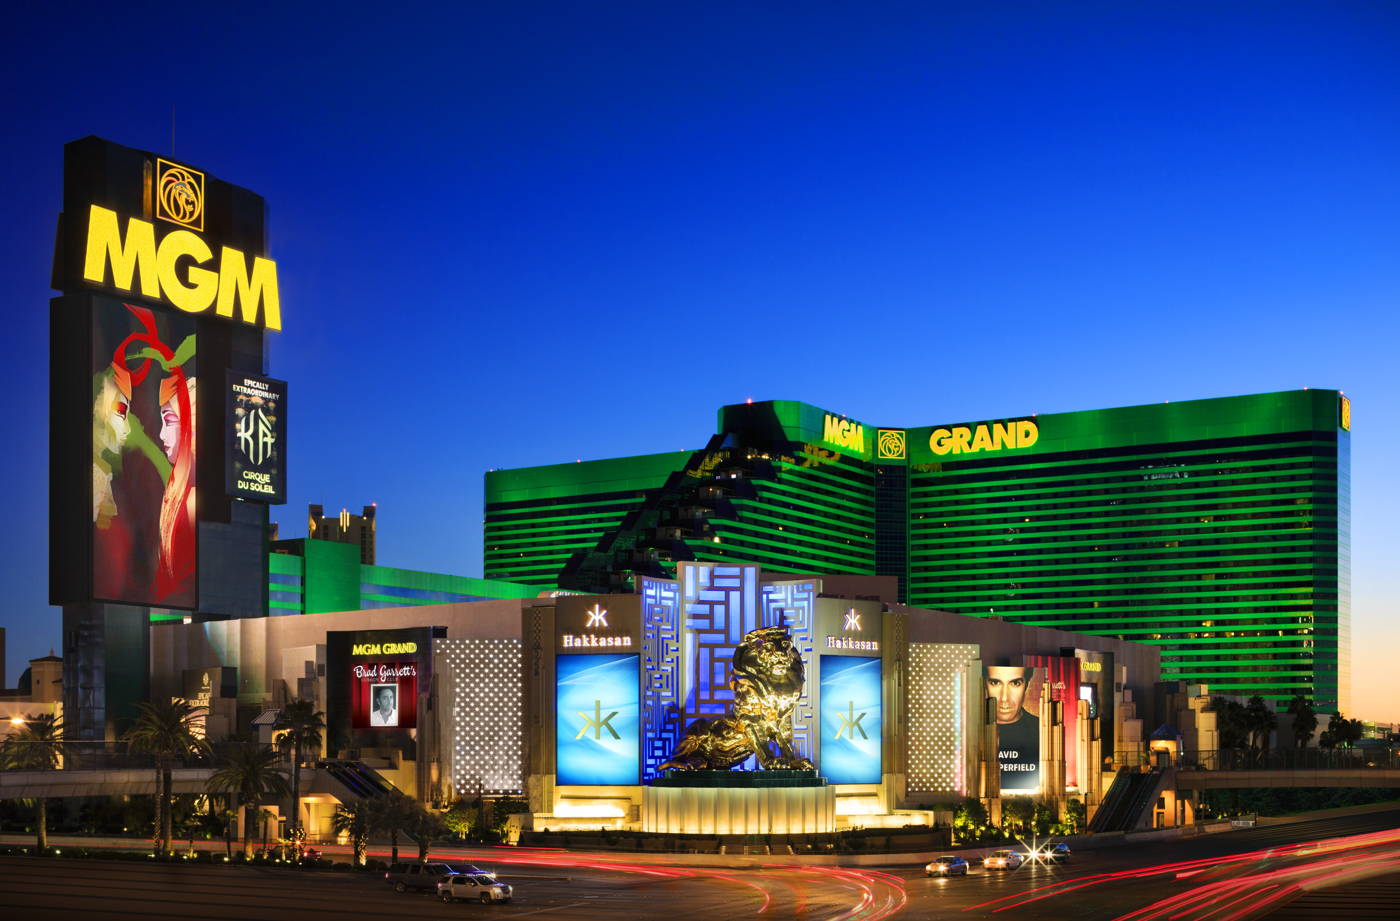 MGM Grand Buffet at MGM Grand Las Vegas